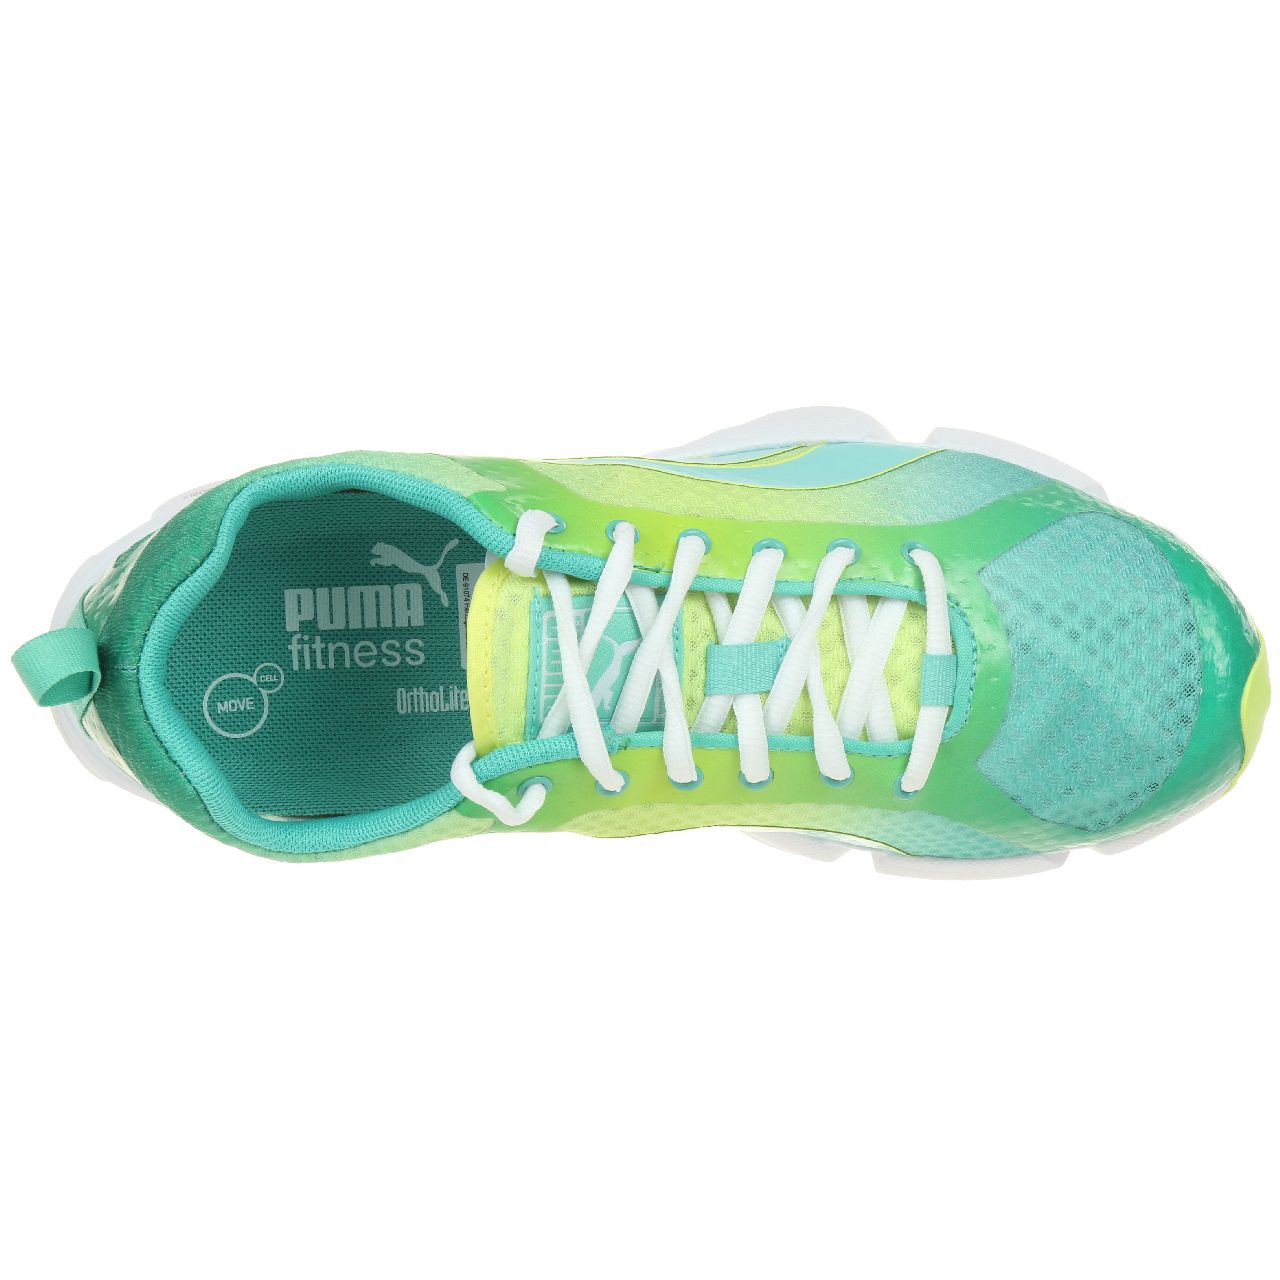 Puma FormLite XT Ultra DipDye Fitness Schuhe Sneaker 187198 01 women damen